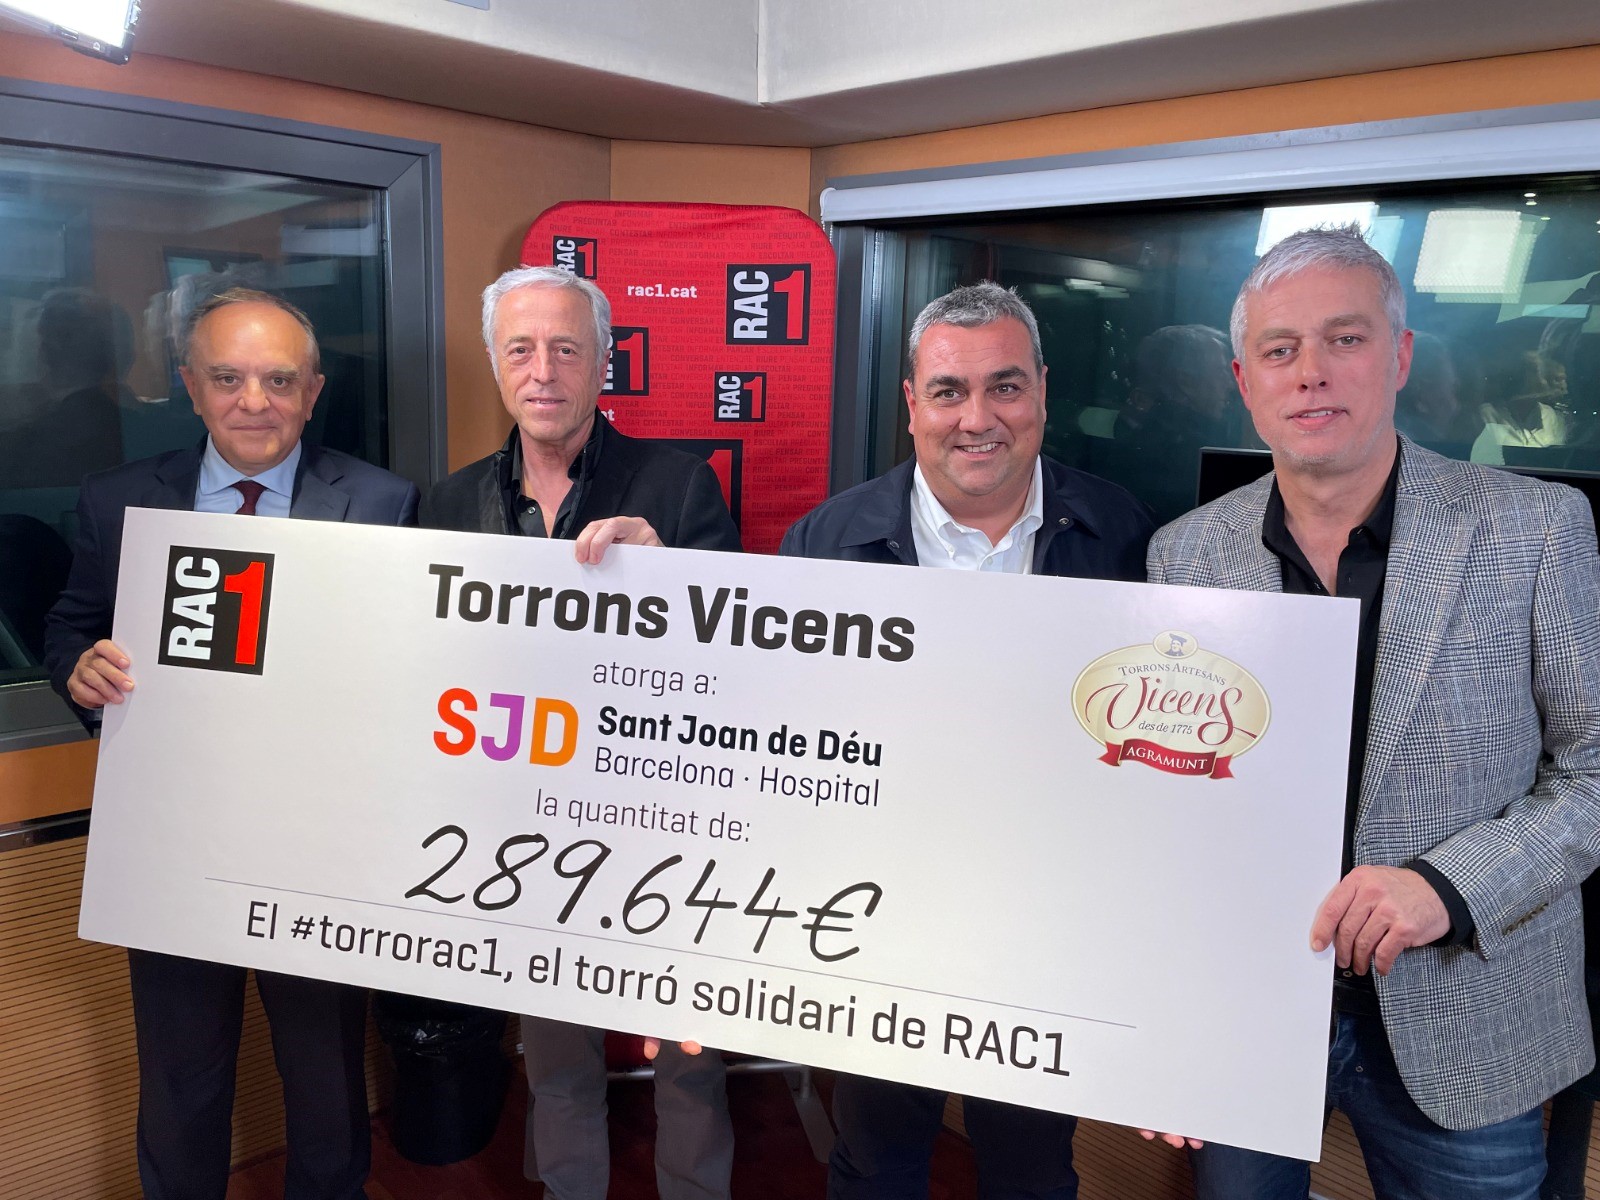  El Torró Solidari de RAC1 es torna a superar, amb 289.644 euros recaptats per a les malalties infantils minoritàries.